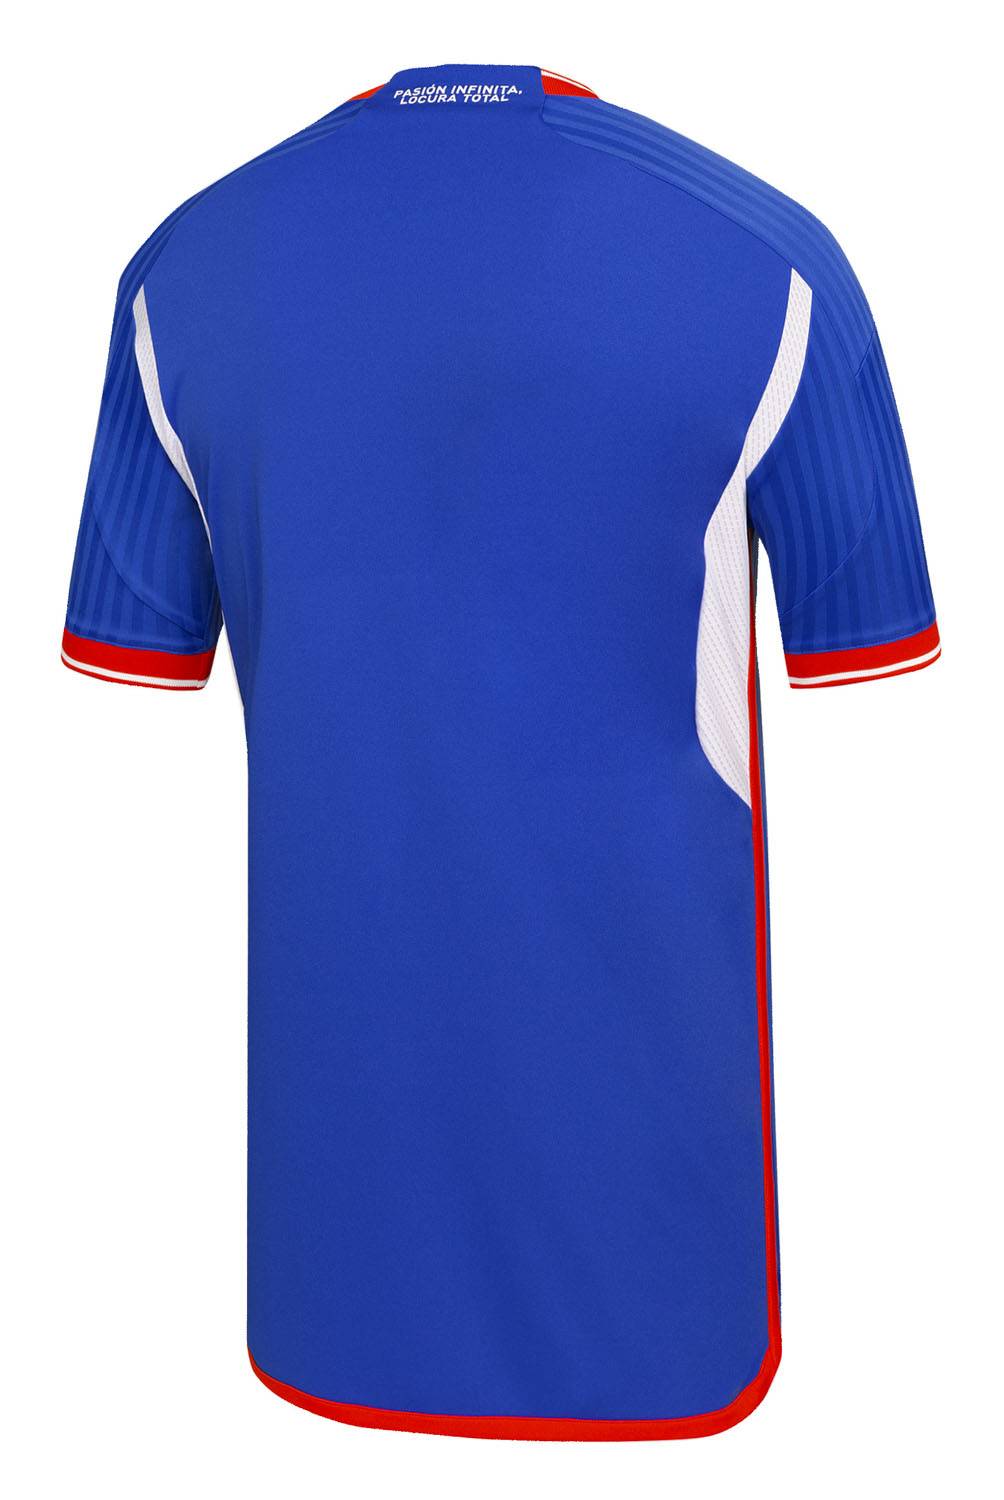 ADIDAS - Camiseta De Fútbol Local Universidad De Chile Hombre Adidas